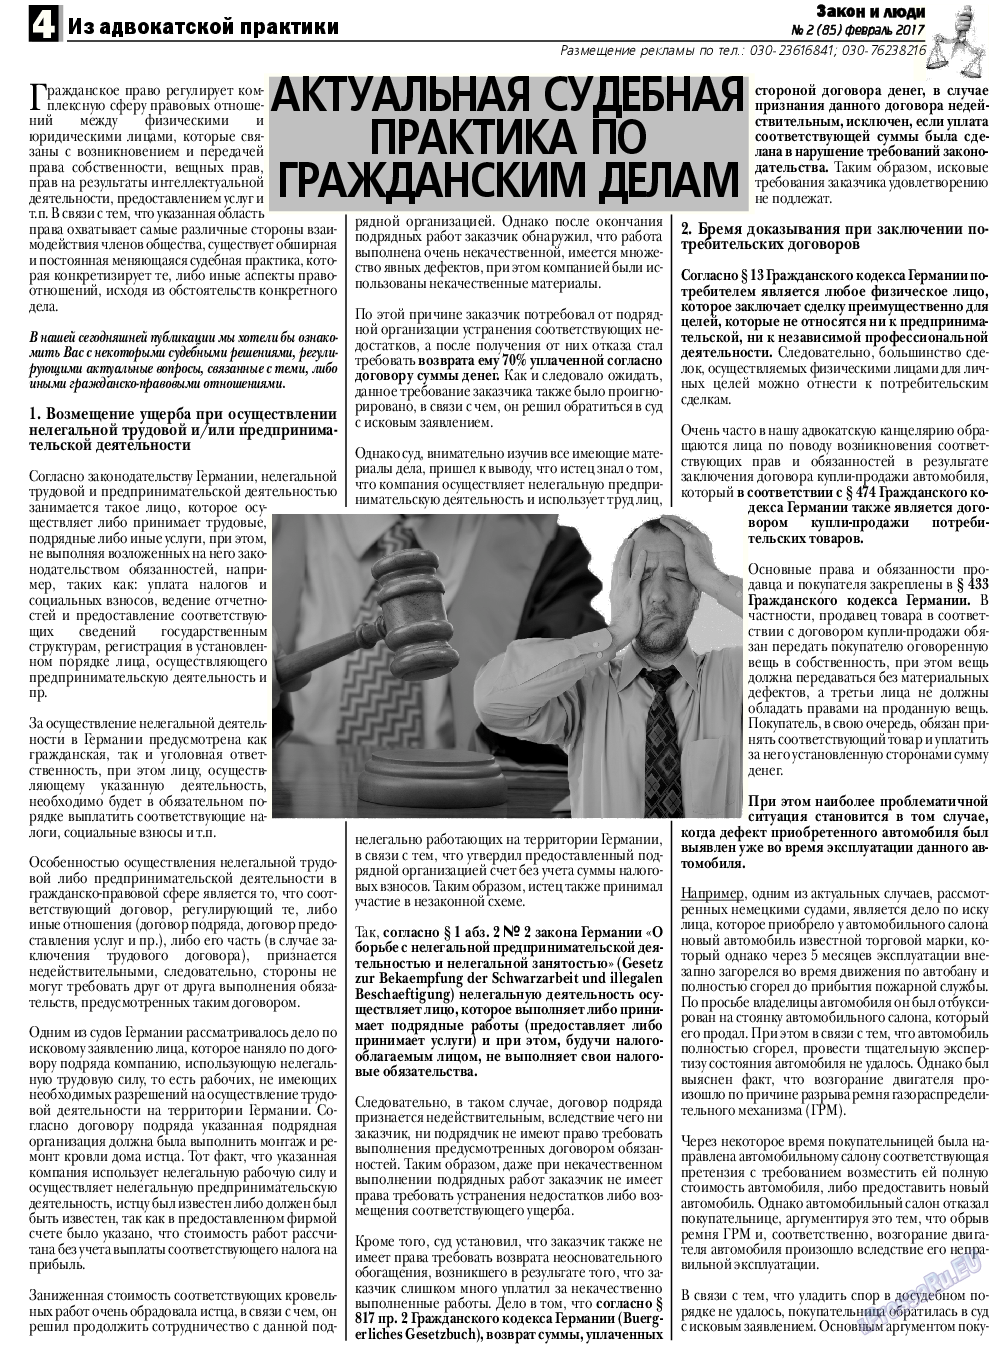 Закон и люди, газета. 2017 №2 стр.4